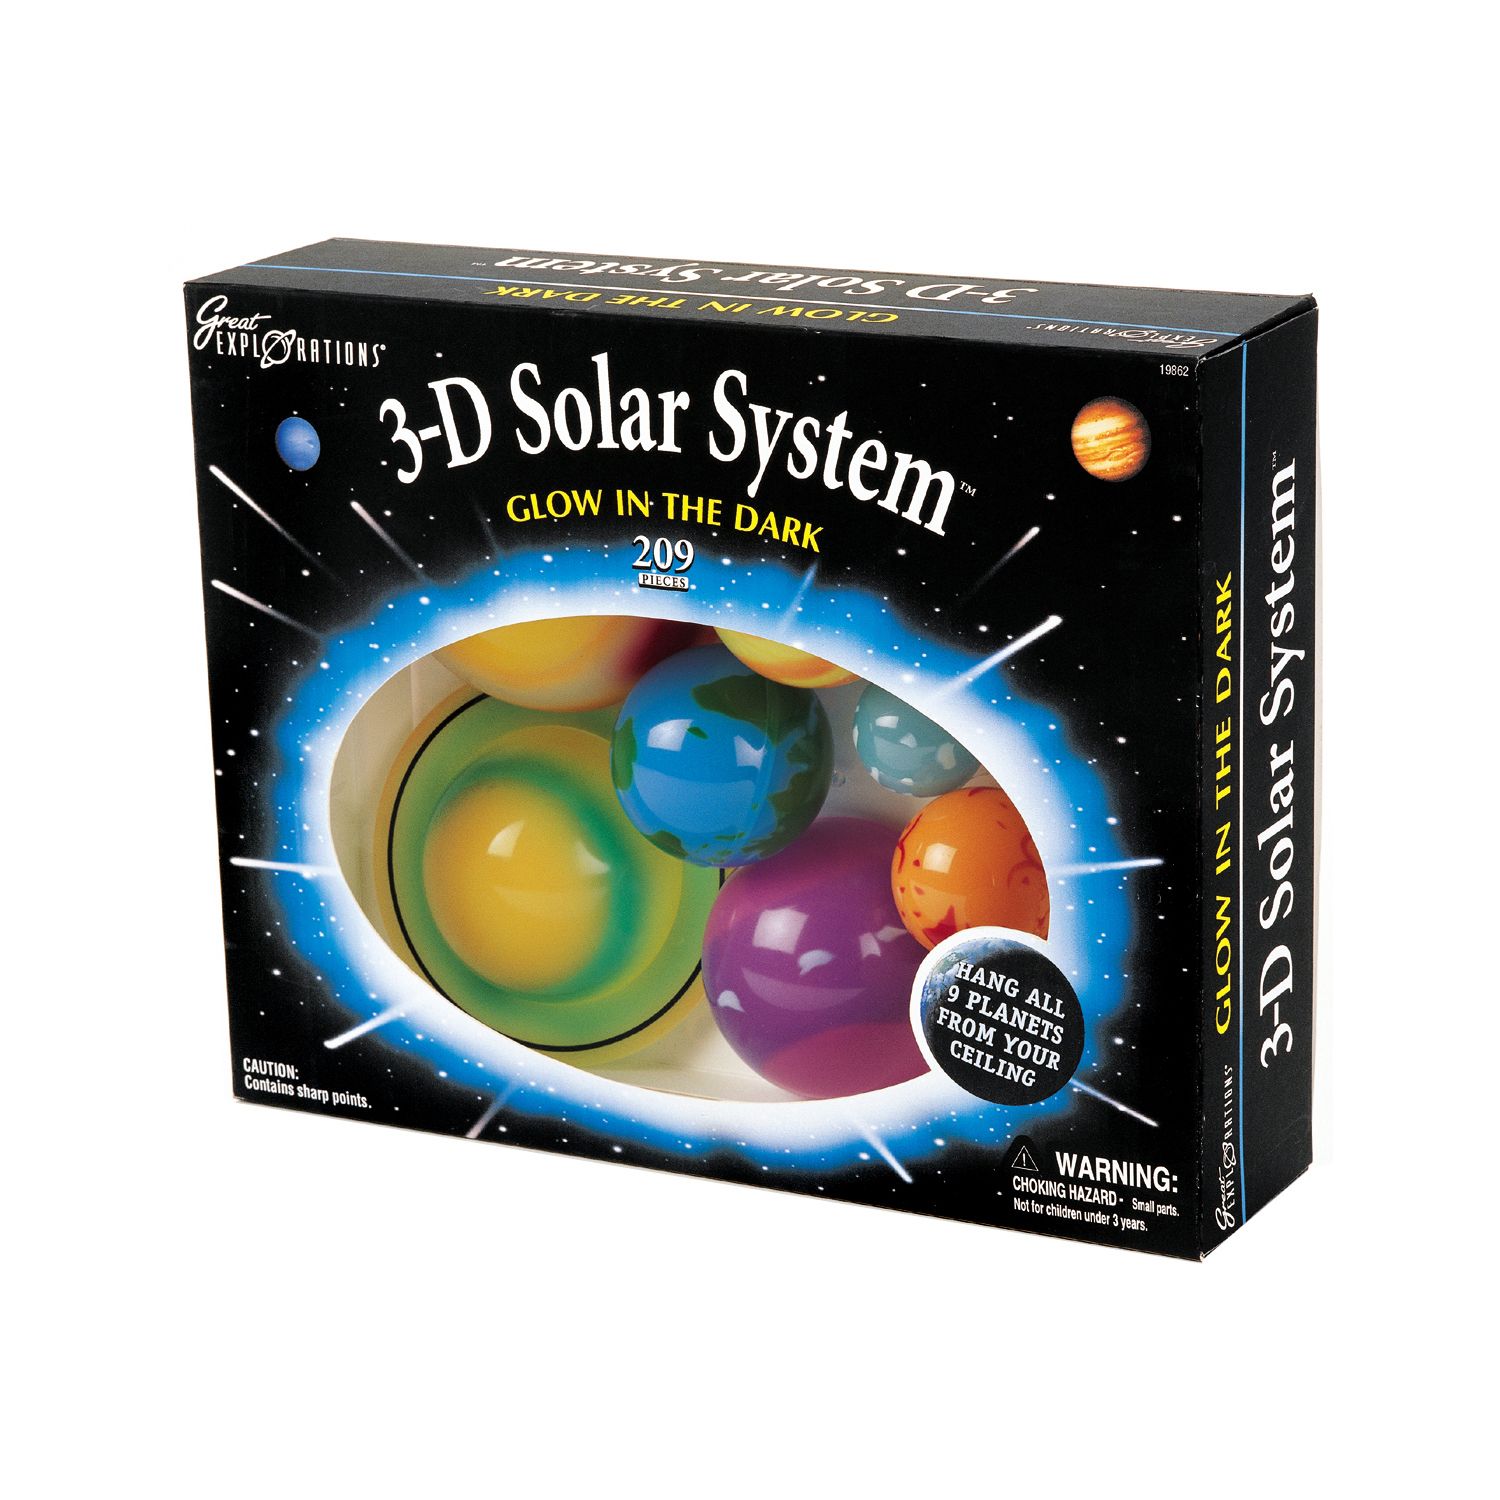 4M 3D Glow-In-The-Dark Solar System Model Making Science Kit